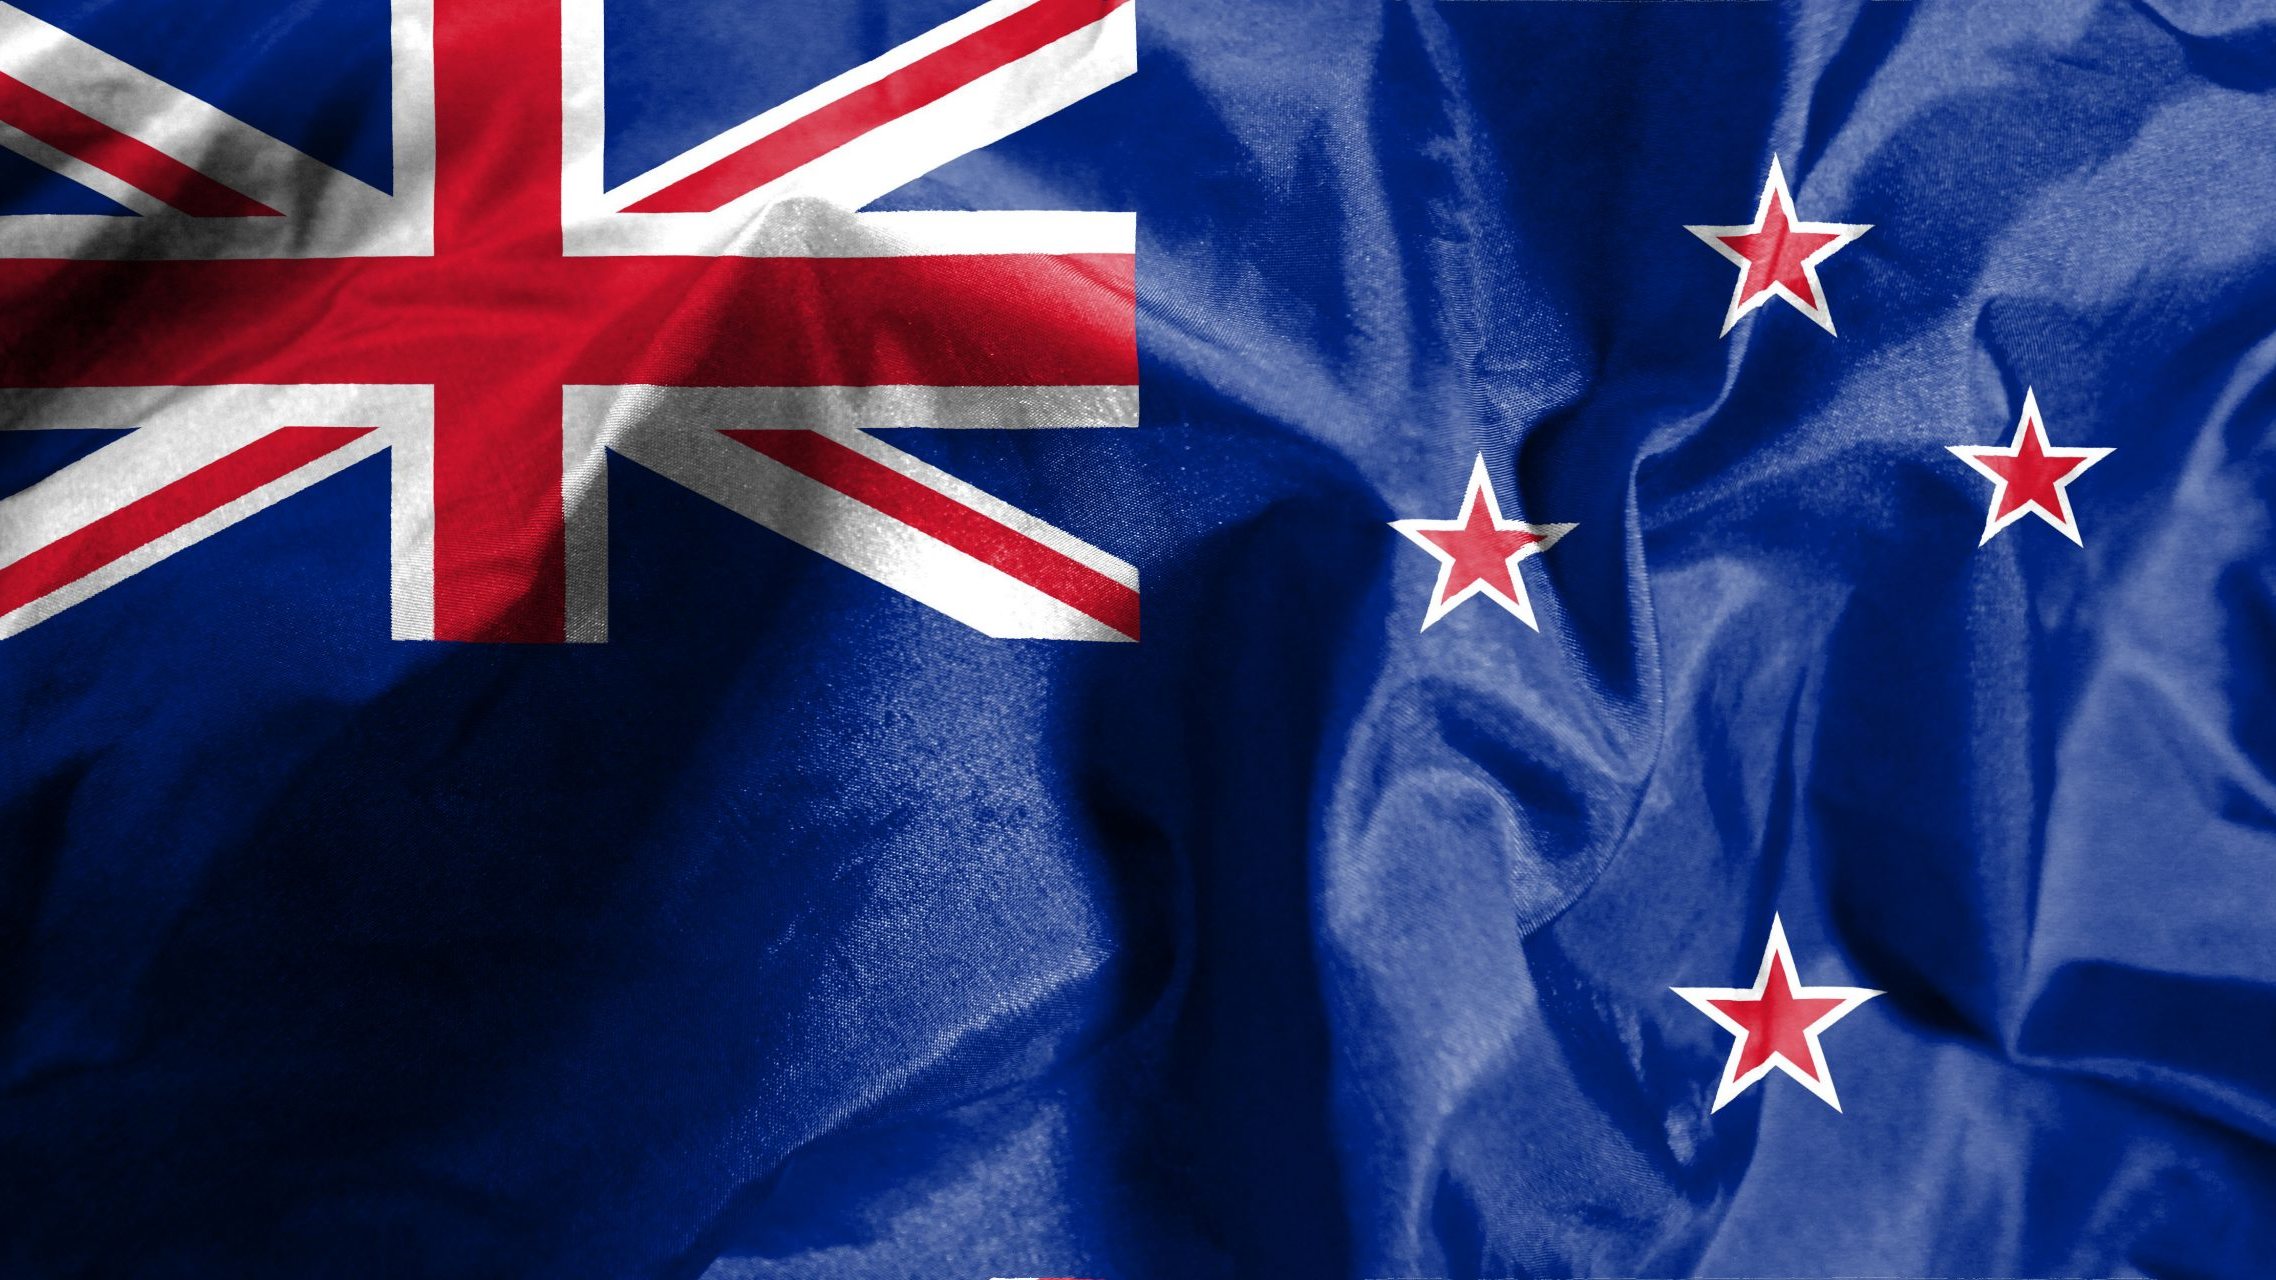 Esta não é a primeira vez que o ensino neozelandês é alvo de uma ameaça de bomba, tendo em conta que um caso semelhante aconteceu em 2016 nas escolas da Nova Zelândia e da Austrália